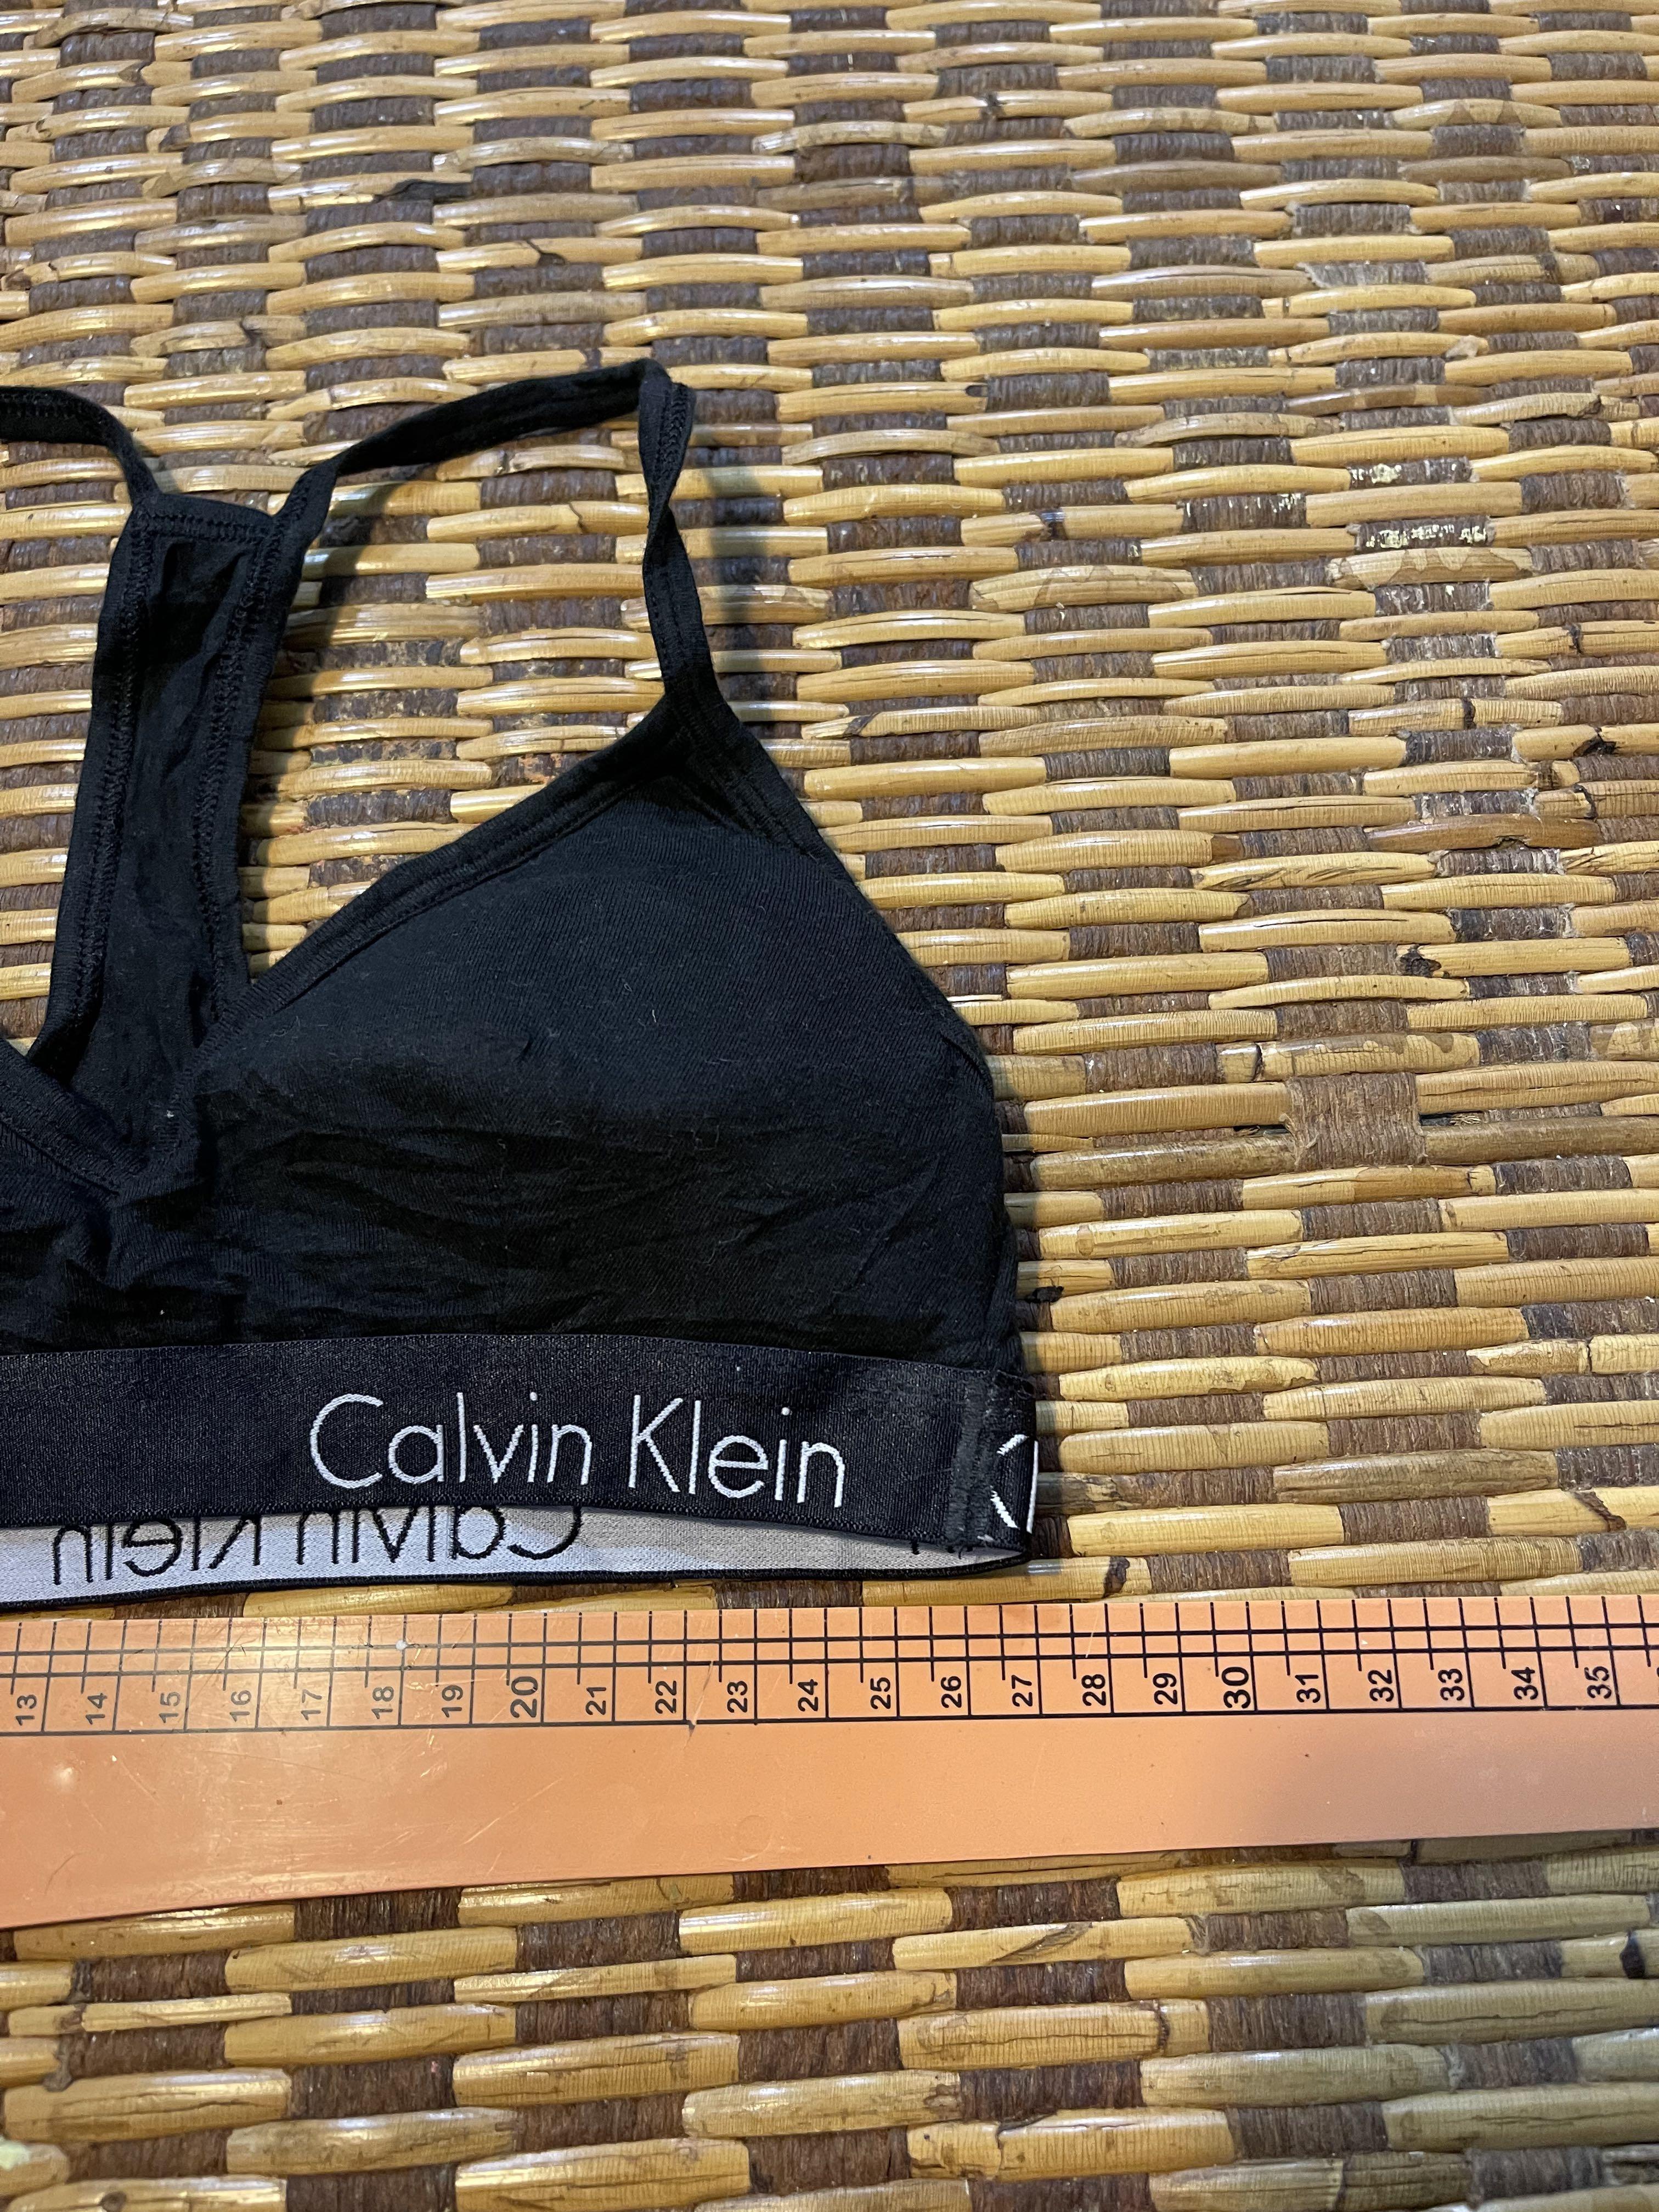 Calvin Klein bra XXS/28, Women's Fashion, Tops, Sleeveless on Carousell